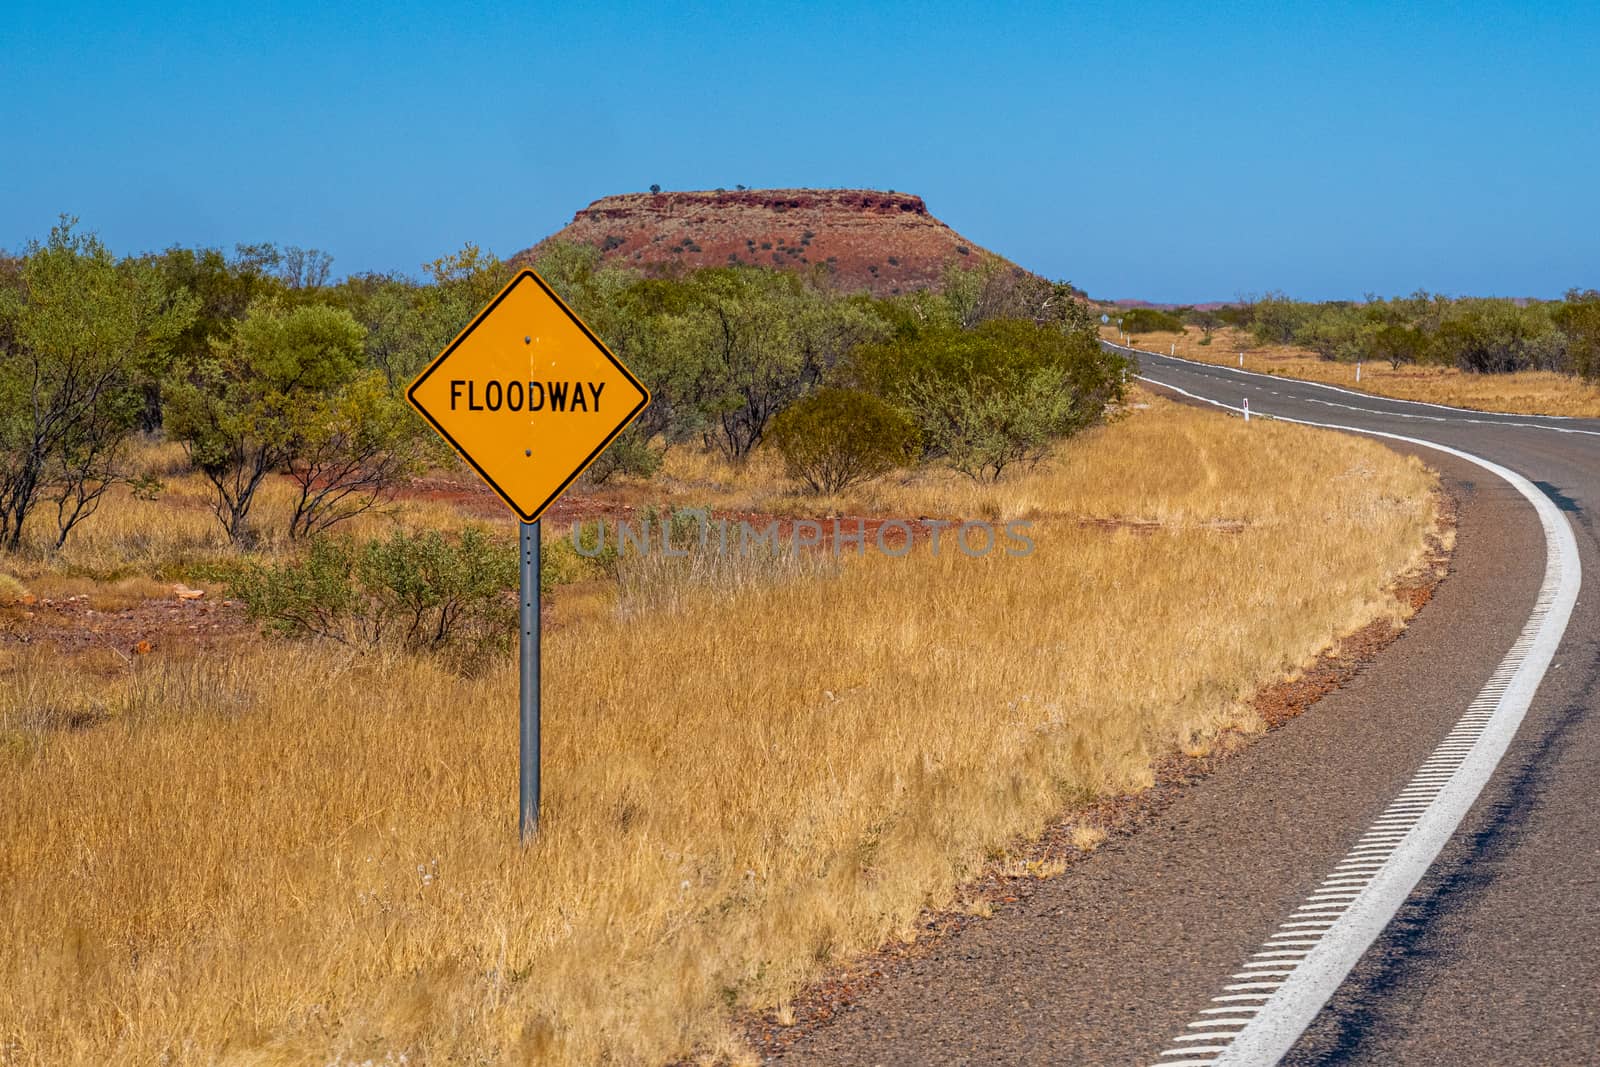 Flood way street sign besides road in Australian bush landscape